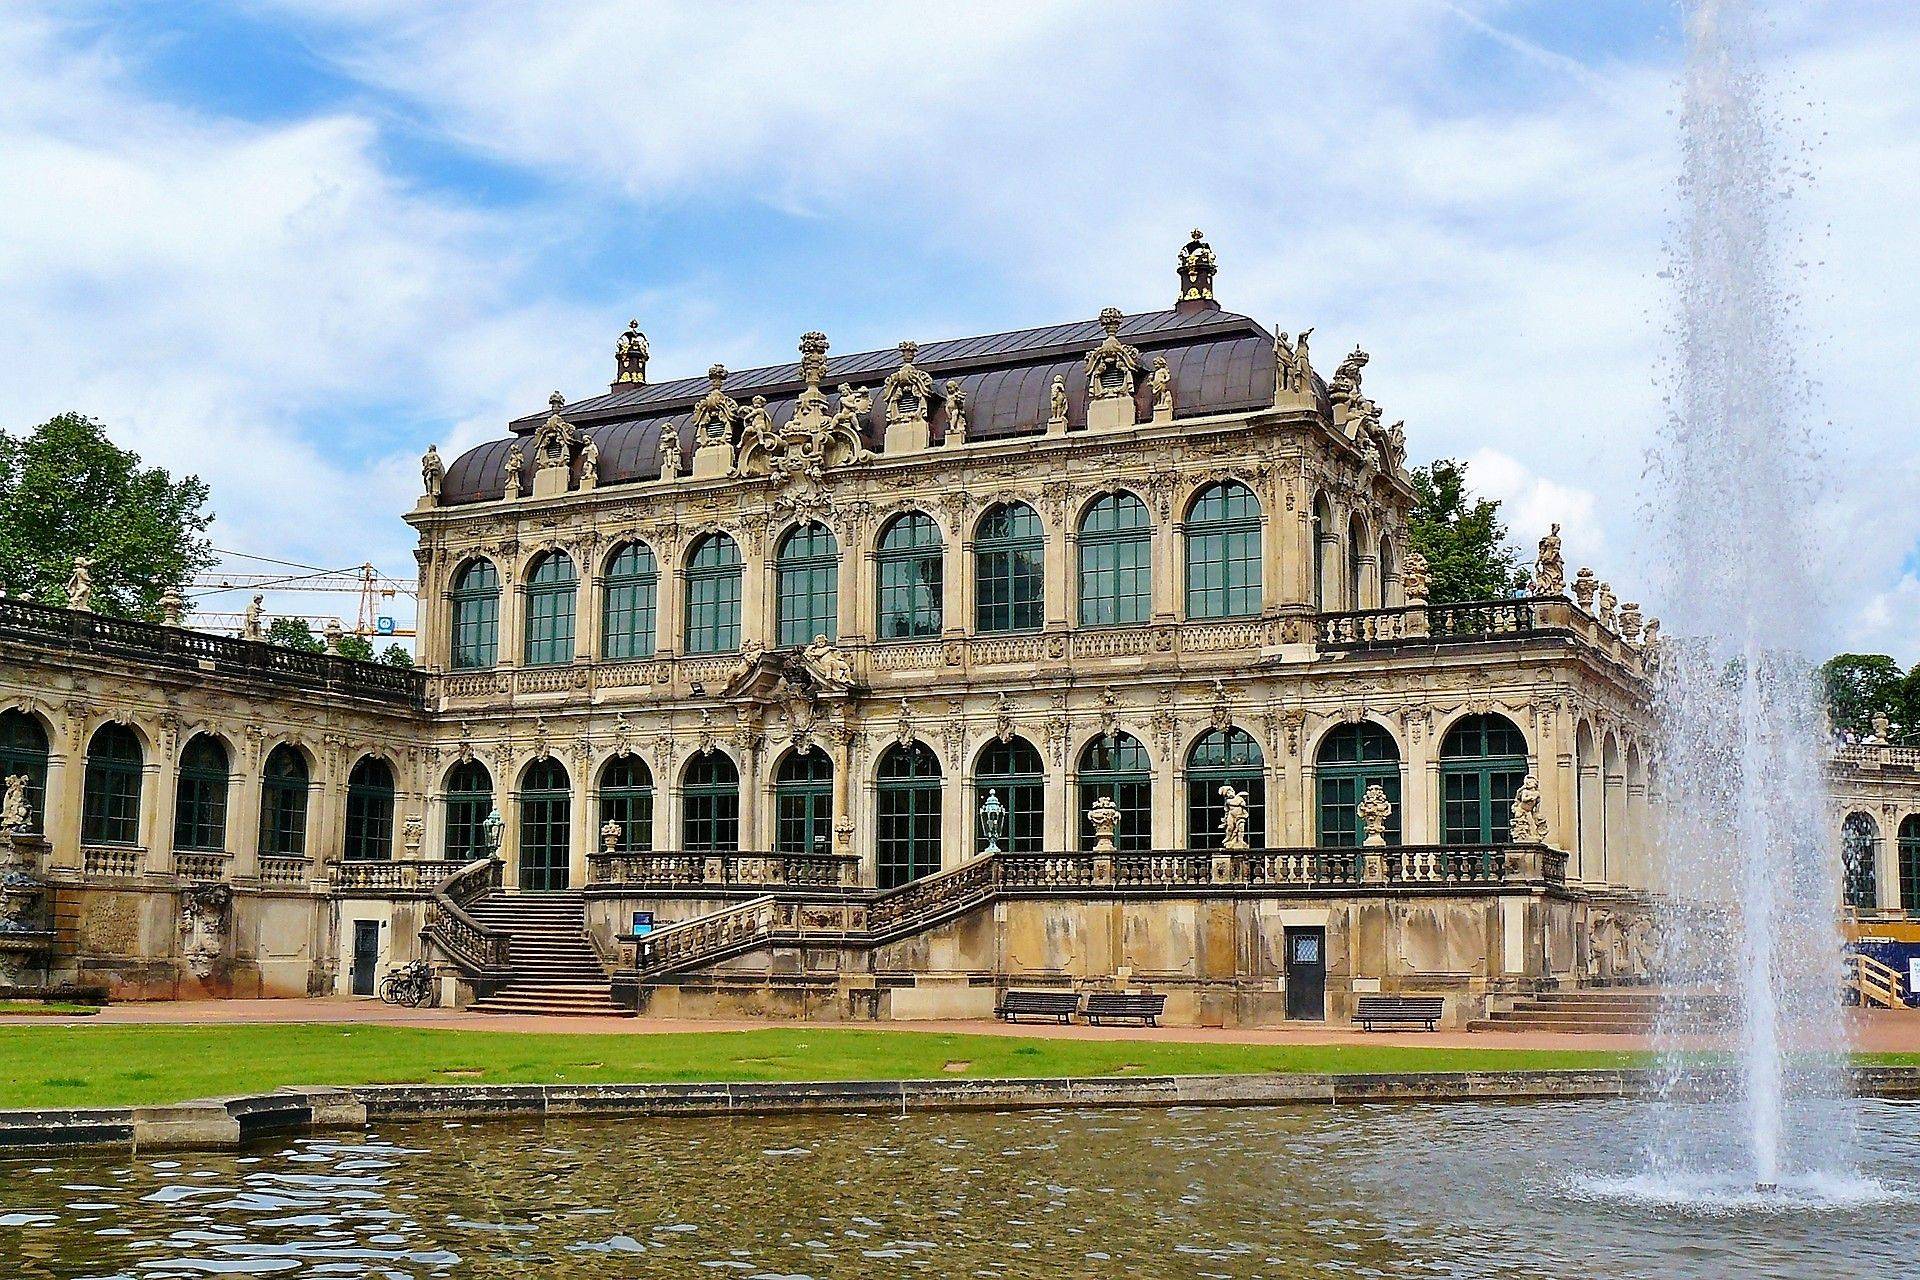 Ansicht des Zwingers in Dresden, Foto von Anja auf pixabay